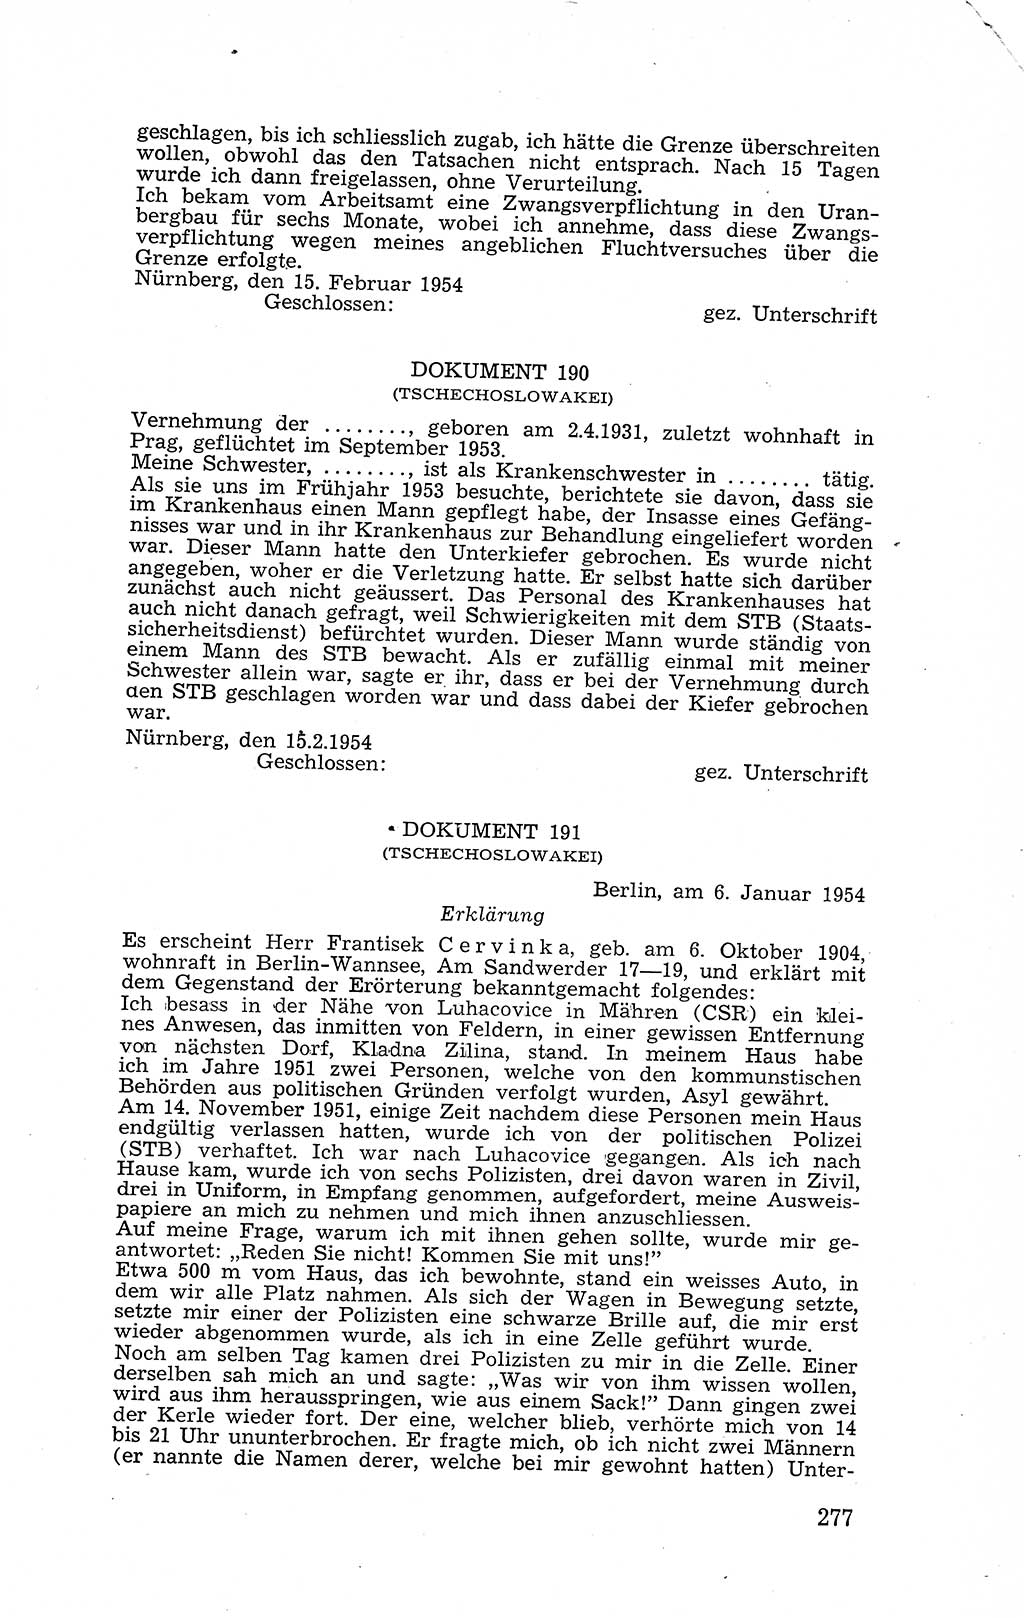 Recht in Fesseln, Dokumente, Internationale Juristen-Kommission [Bundesrepublik Deutschland (BRD)] 1955, Seite 277 (R. Dok. IJK BRD 1955, S. 277)